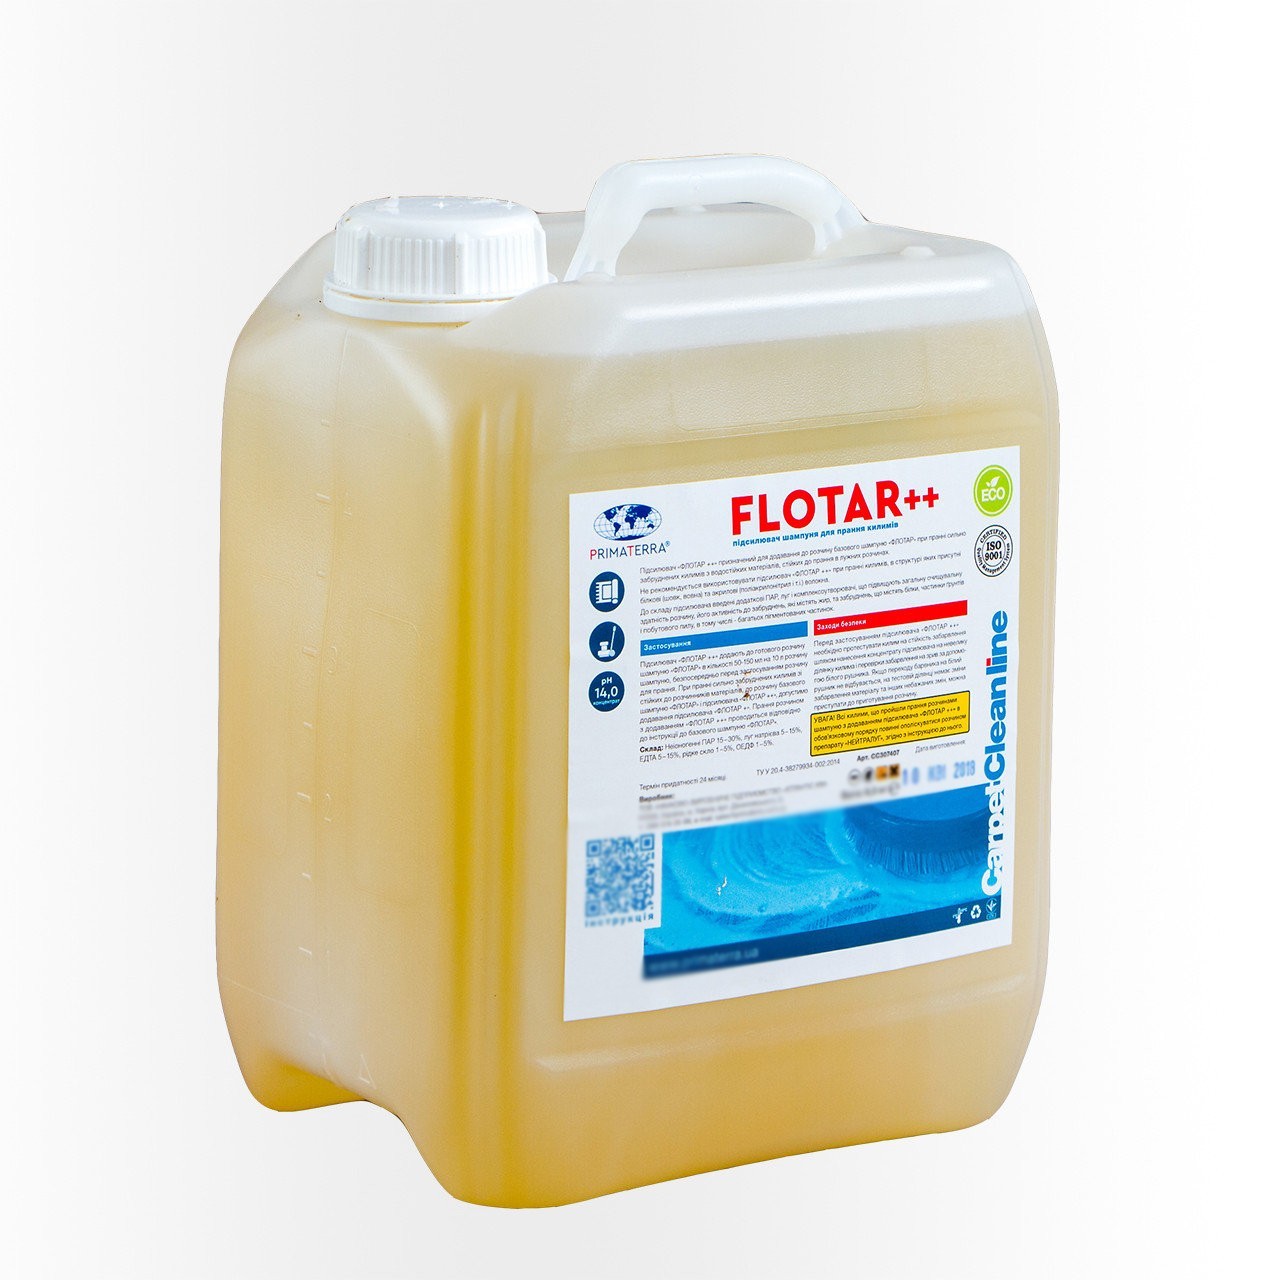 Flotar++жесткий усилитель для стирки ковров Primaterra 6.5кг CC307407